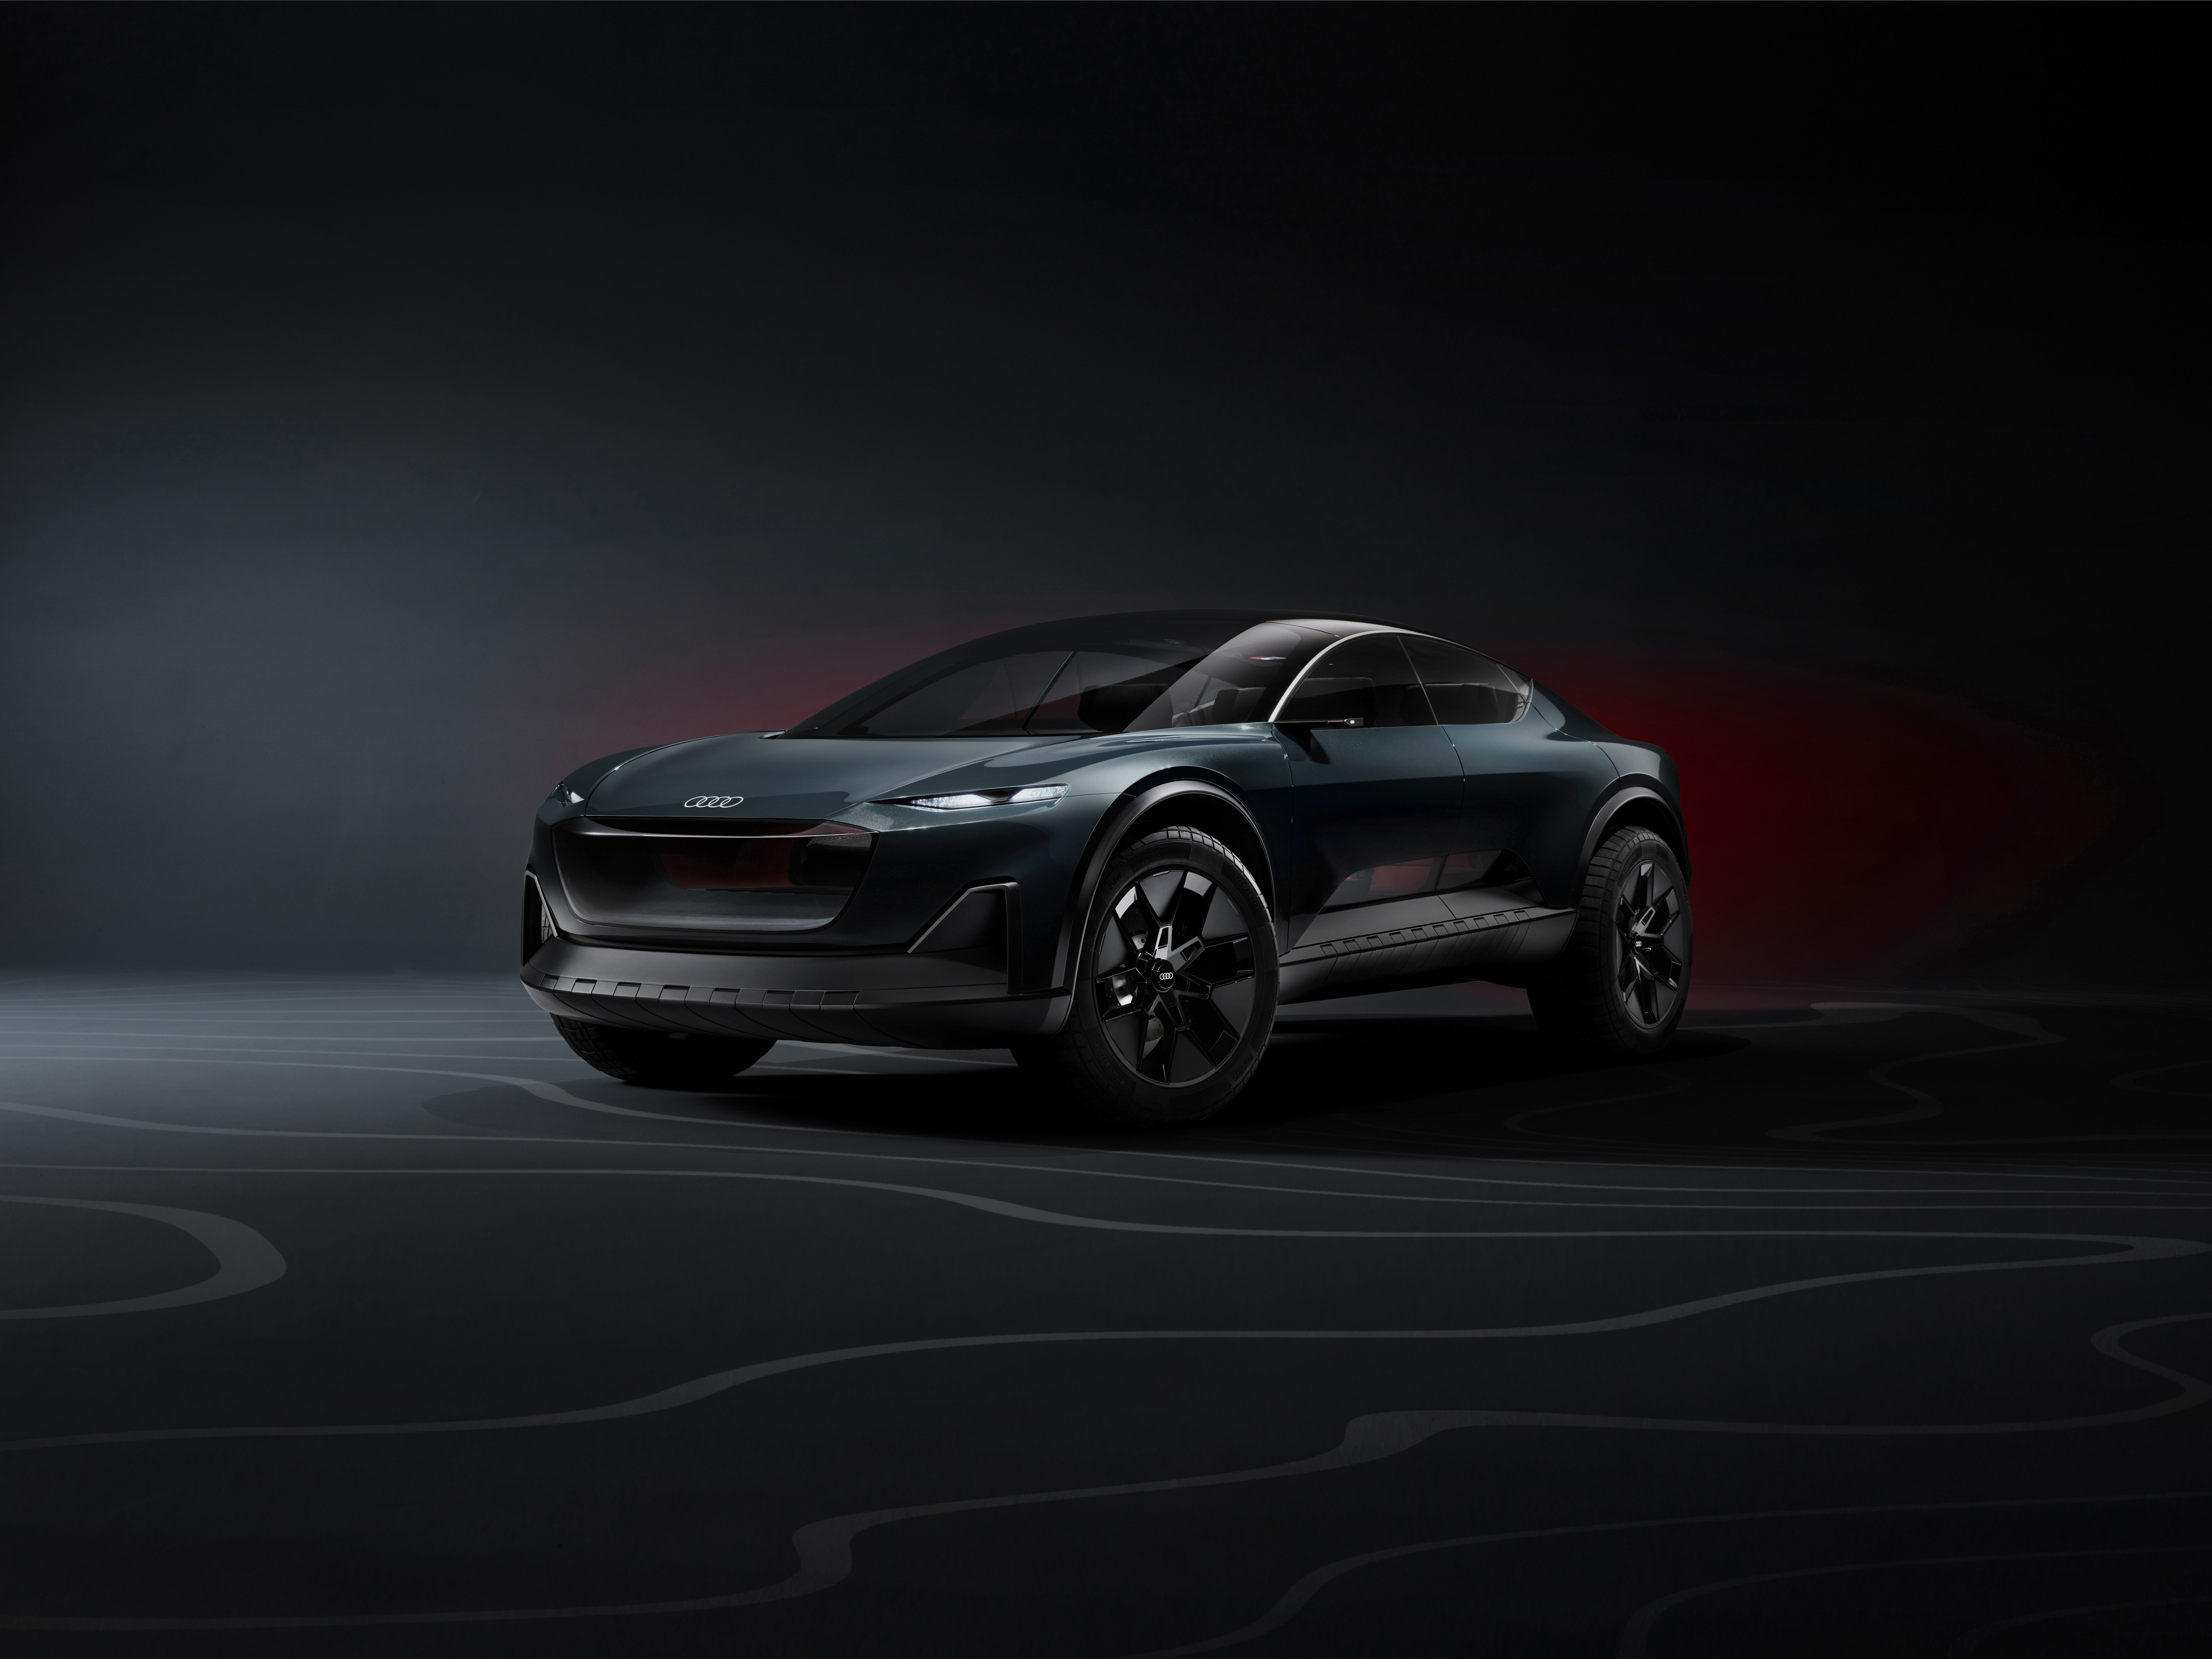 アウディ、車両情報をAR表示する新EV「Audi activesphere」を発表─ARグラス「Magic Leap 2」で操作